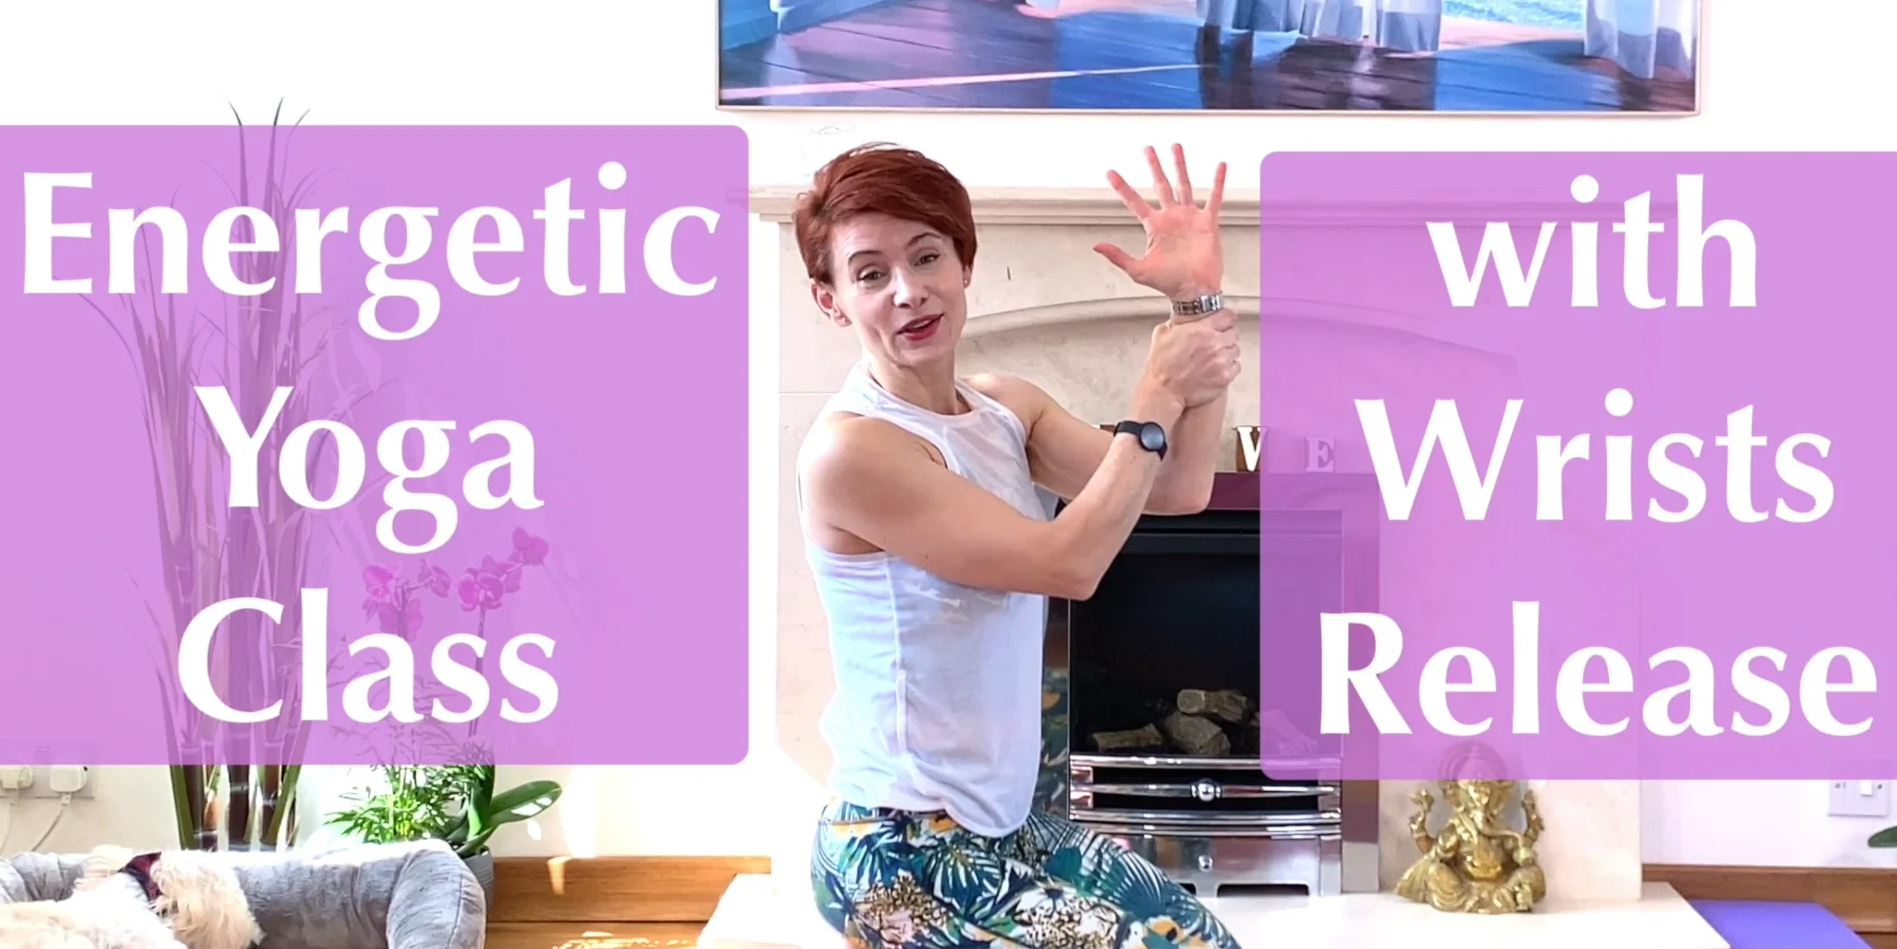 Olga Oakenfold - Energetic Yoga Class with Wrists Release